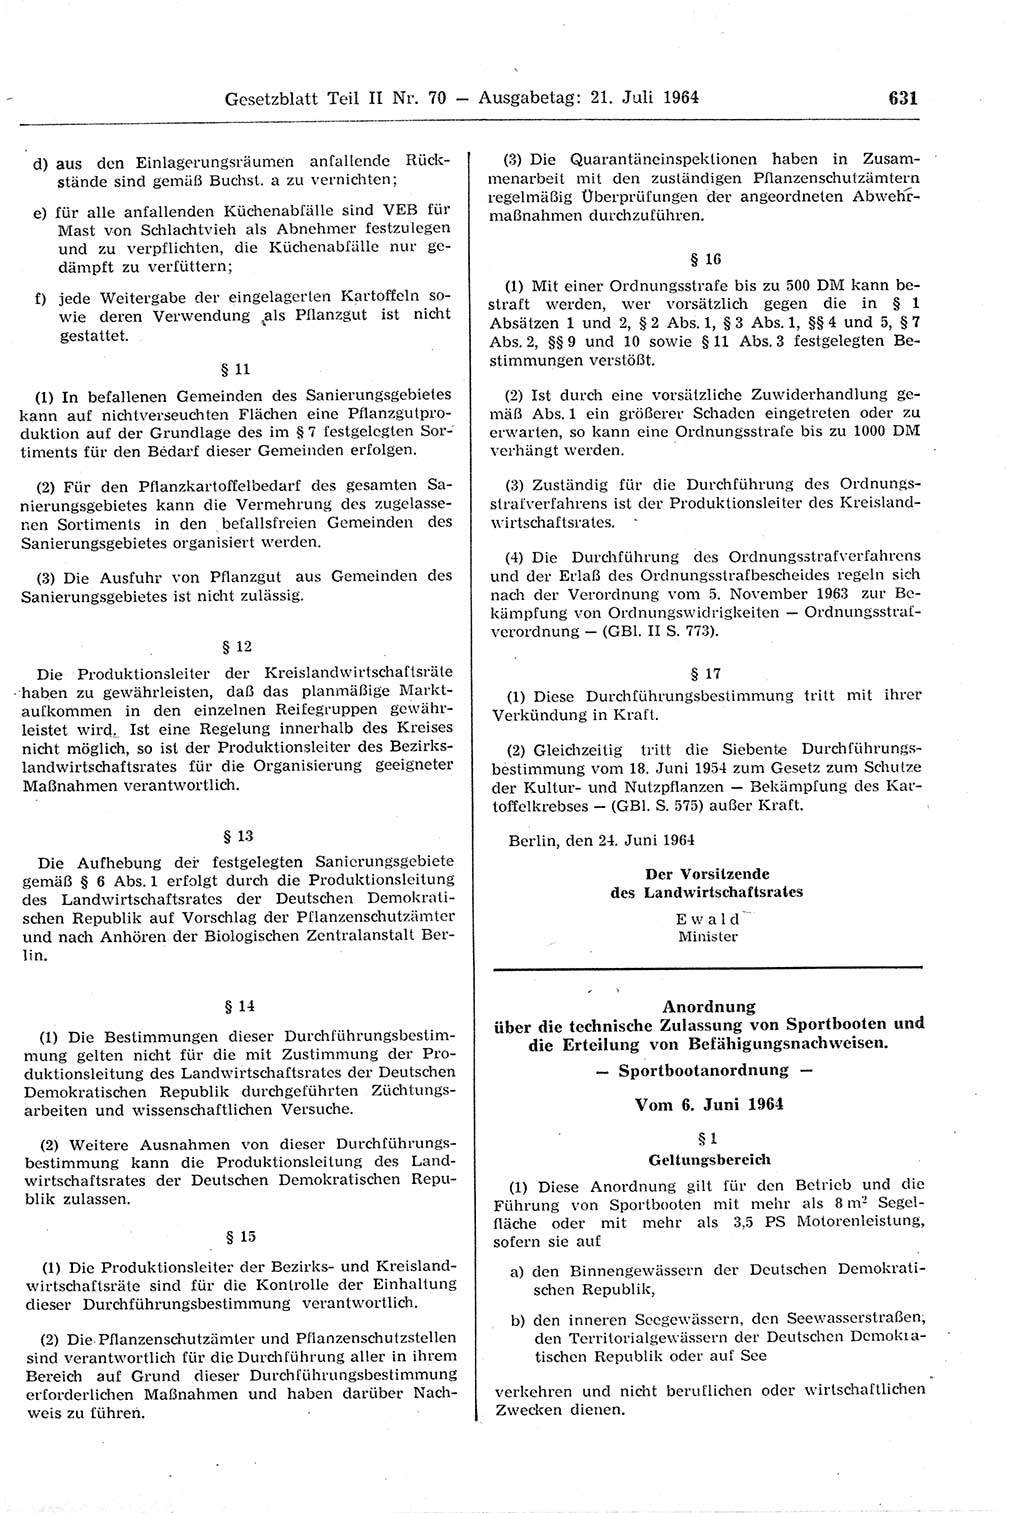 Gesetzblatt (GBl.) der Deutschen Demokratischen Republik (DDR) Teil ⅠⅠ 1964, Seite 631 (GBl. DDR ⅠⅠ 1964, S. 631)